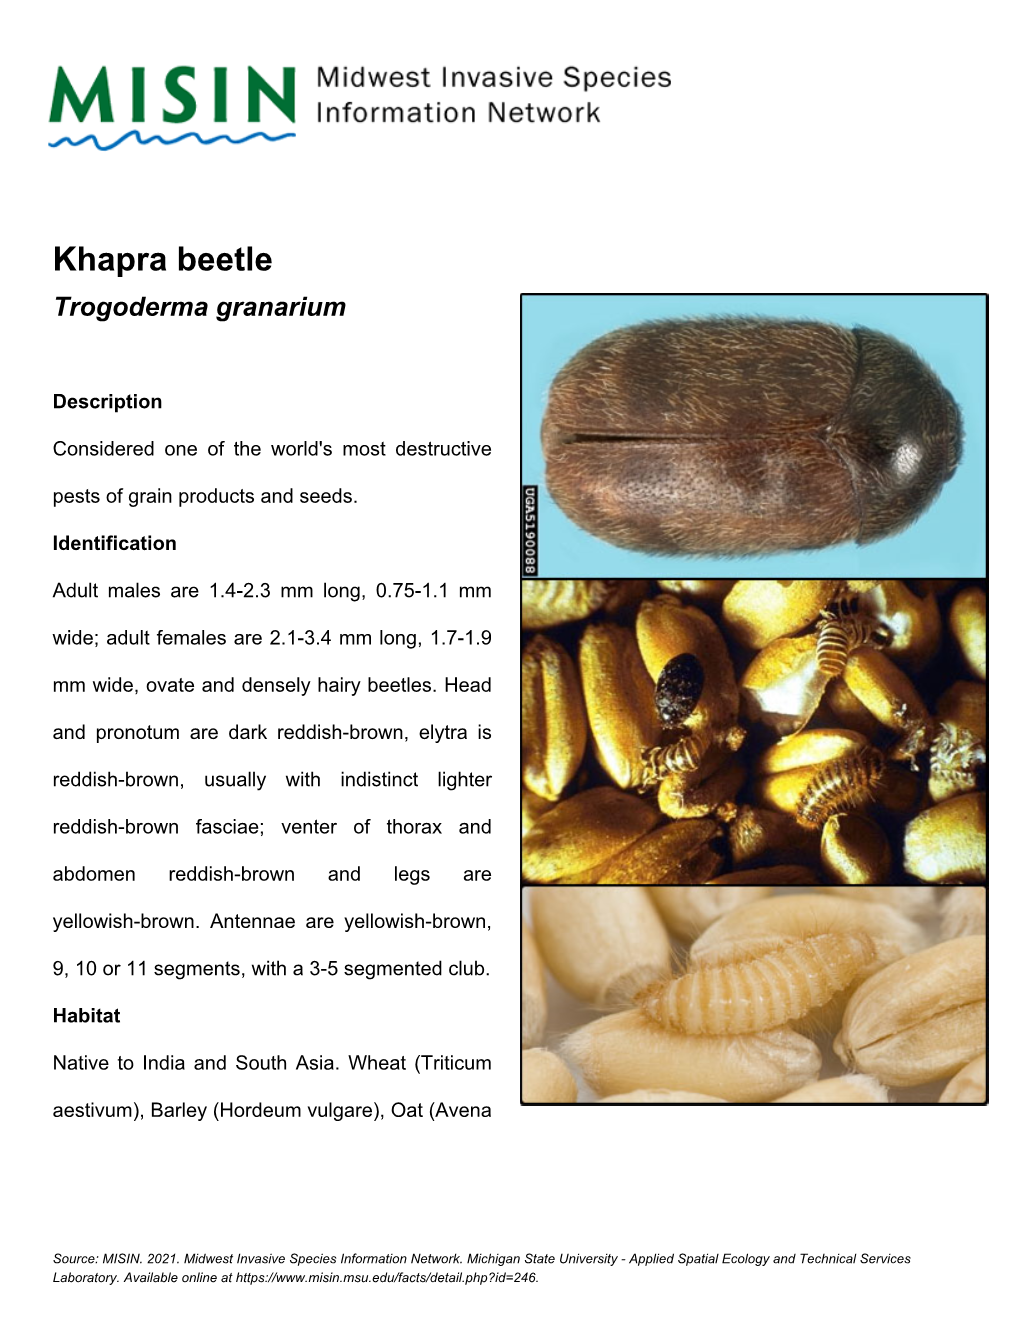 Khapra Beetle Trogoderma Granarium